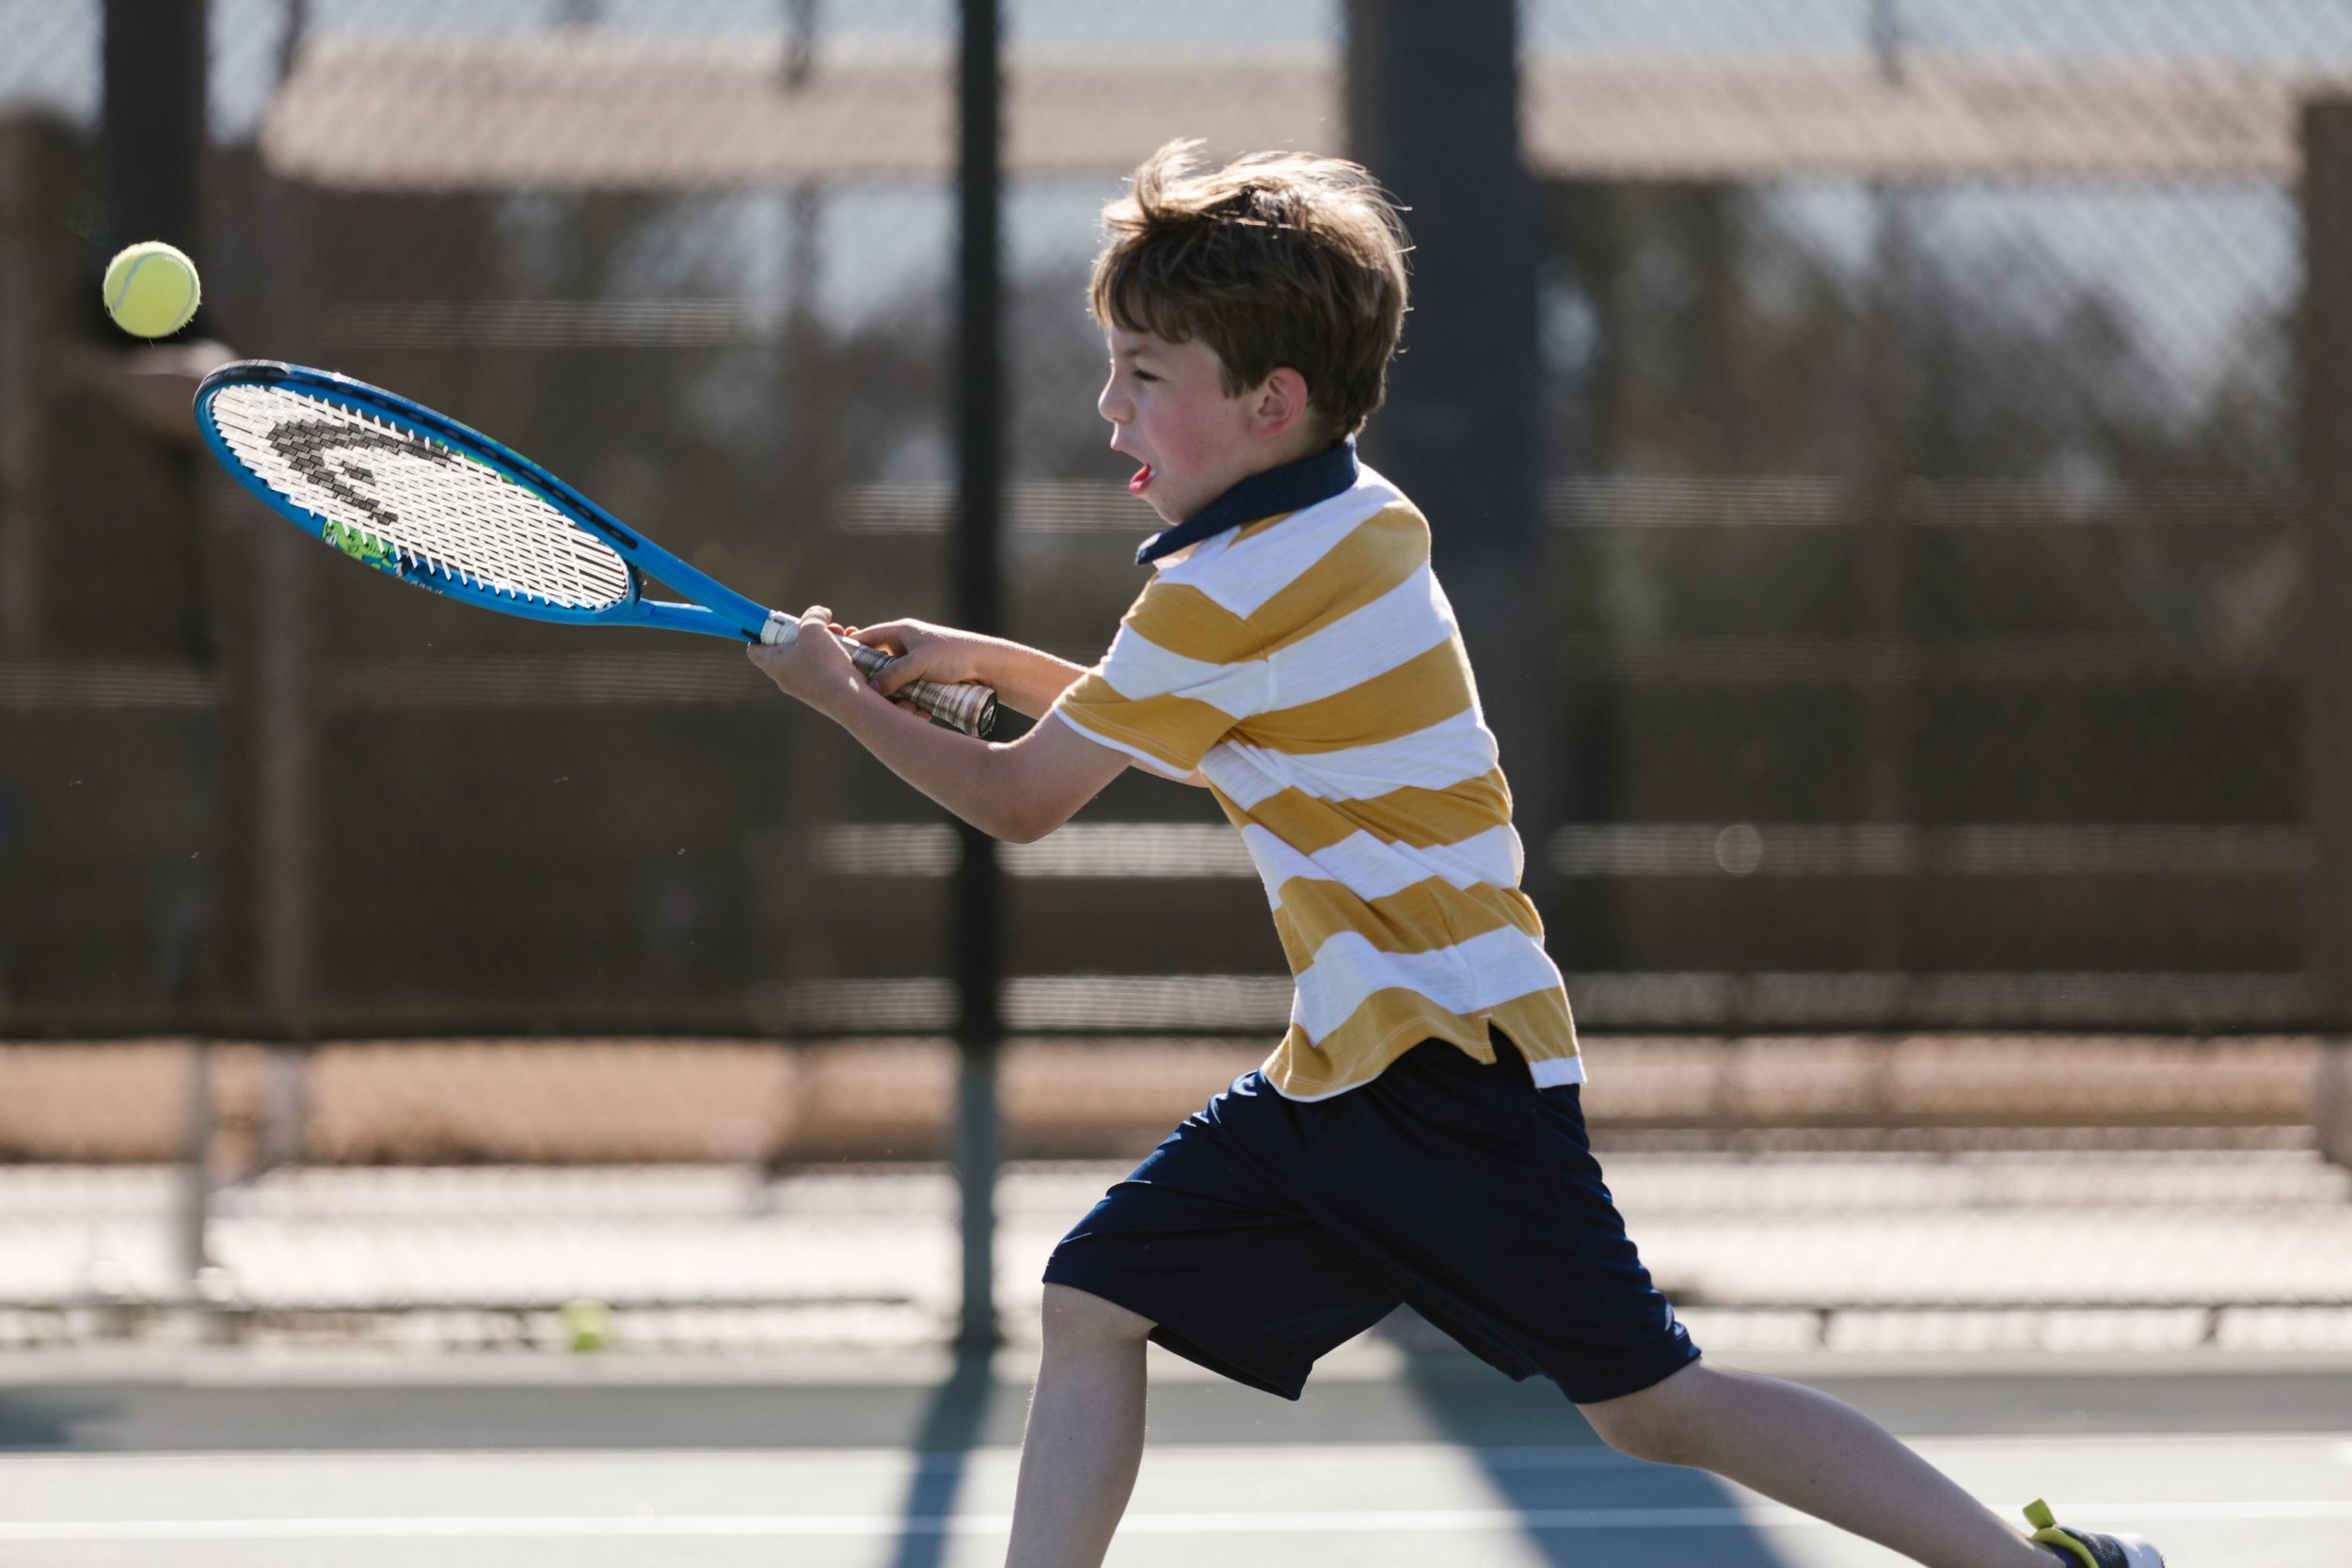 Boy playing Tennis. Play Tennis. Boy Plays Tennis. Изображение детей, играющих теннис с воздушным шариком на улице.